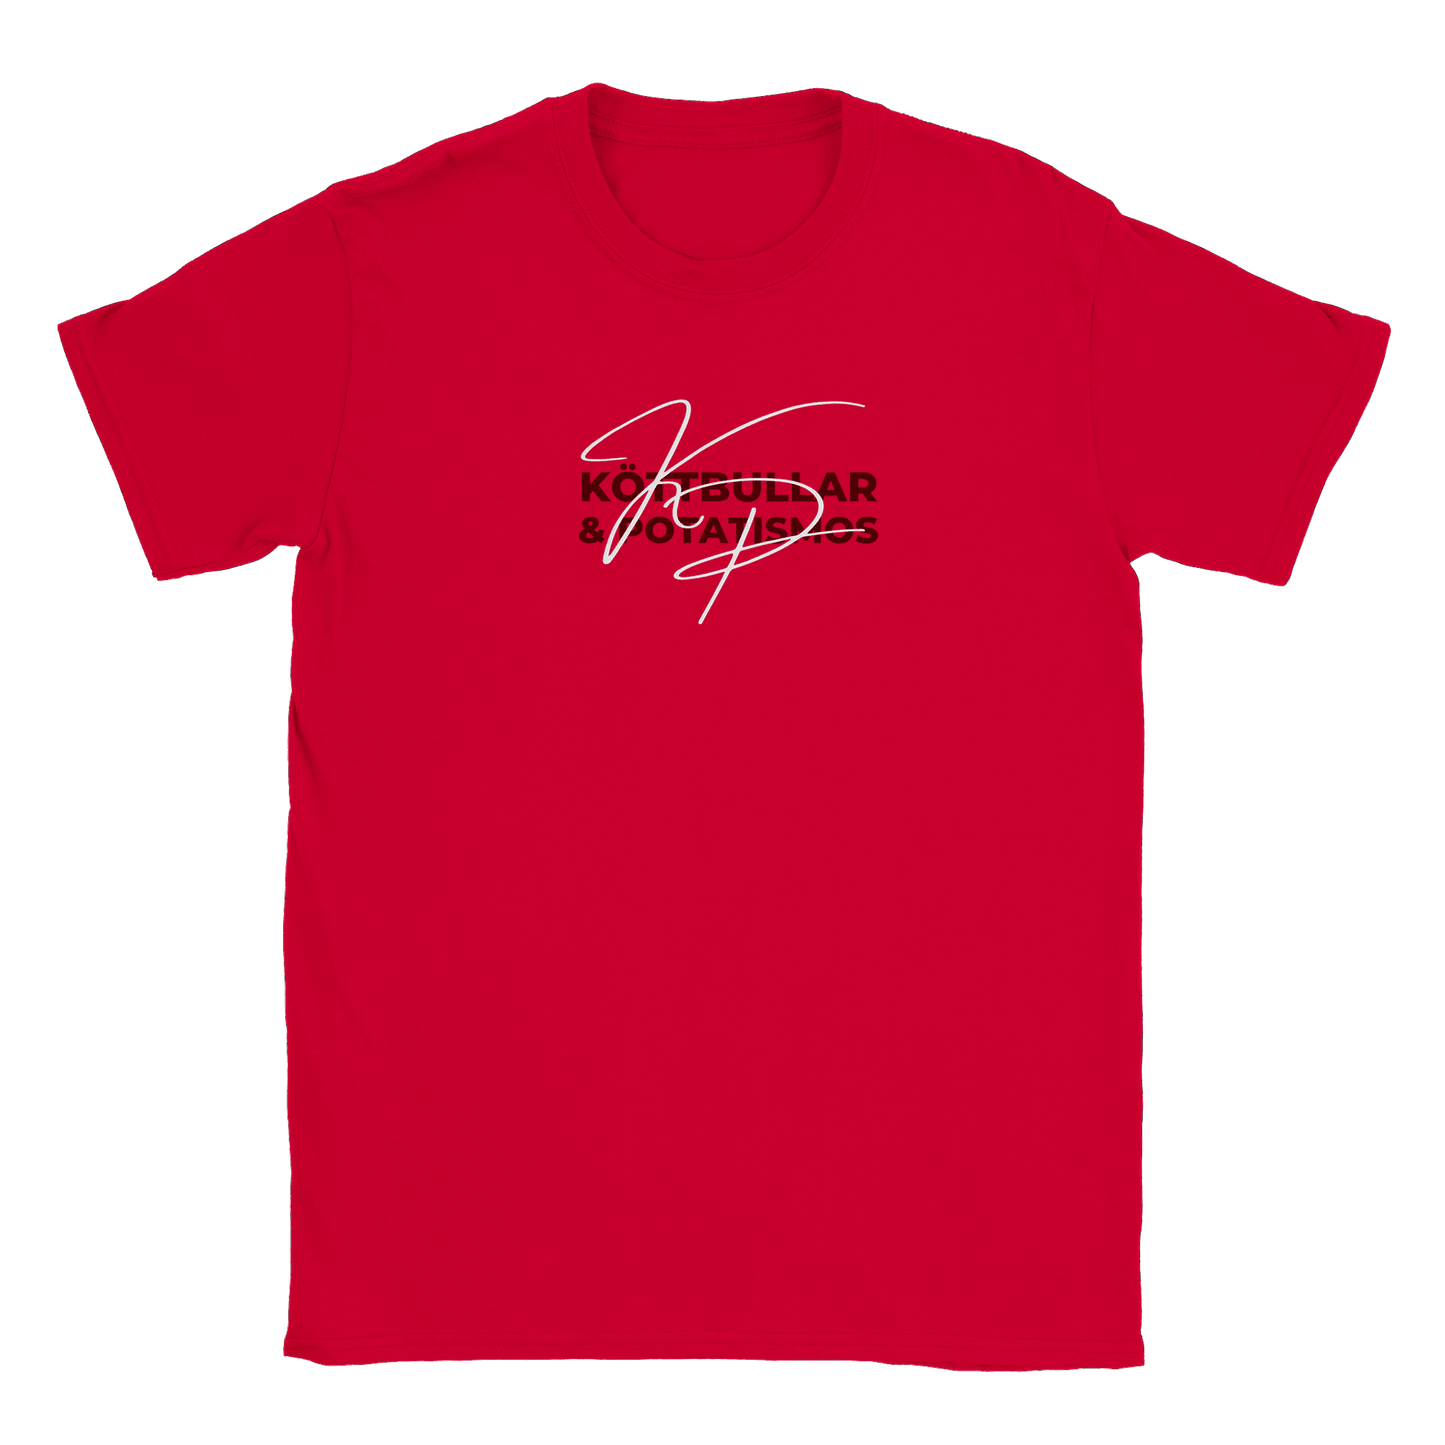 Köttbullar och potatismos - T-shirt Röd